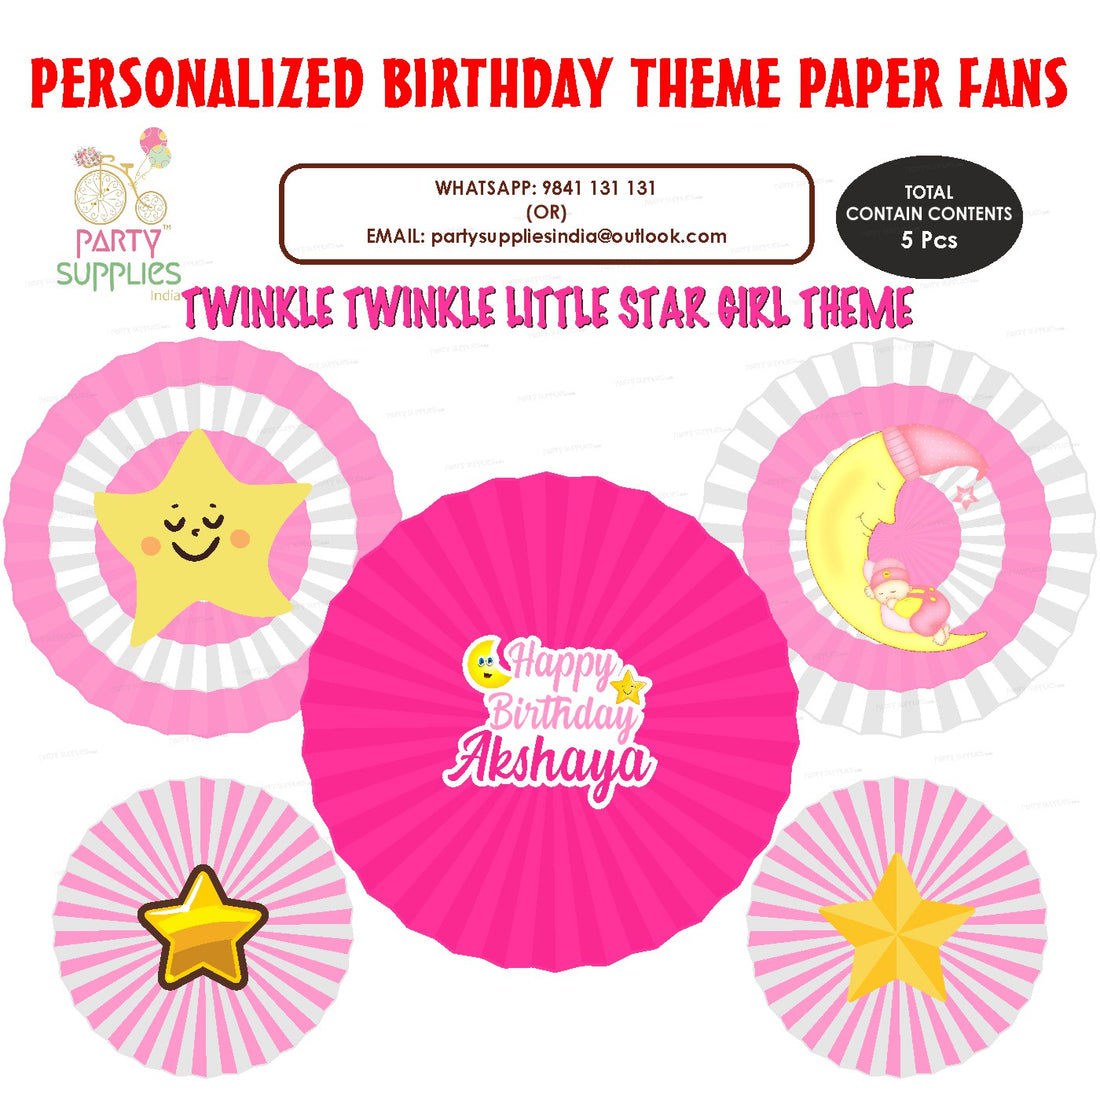 PSI Twinkle Twinkle Little Star Girl Theme Paper Fan